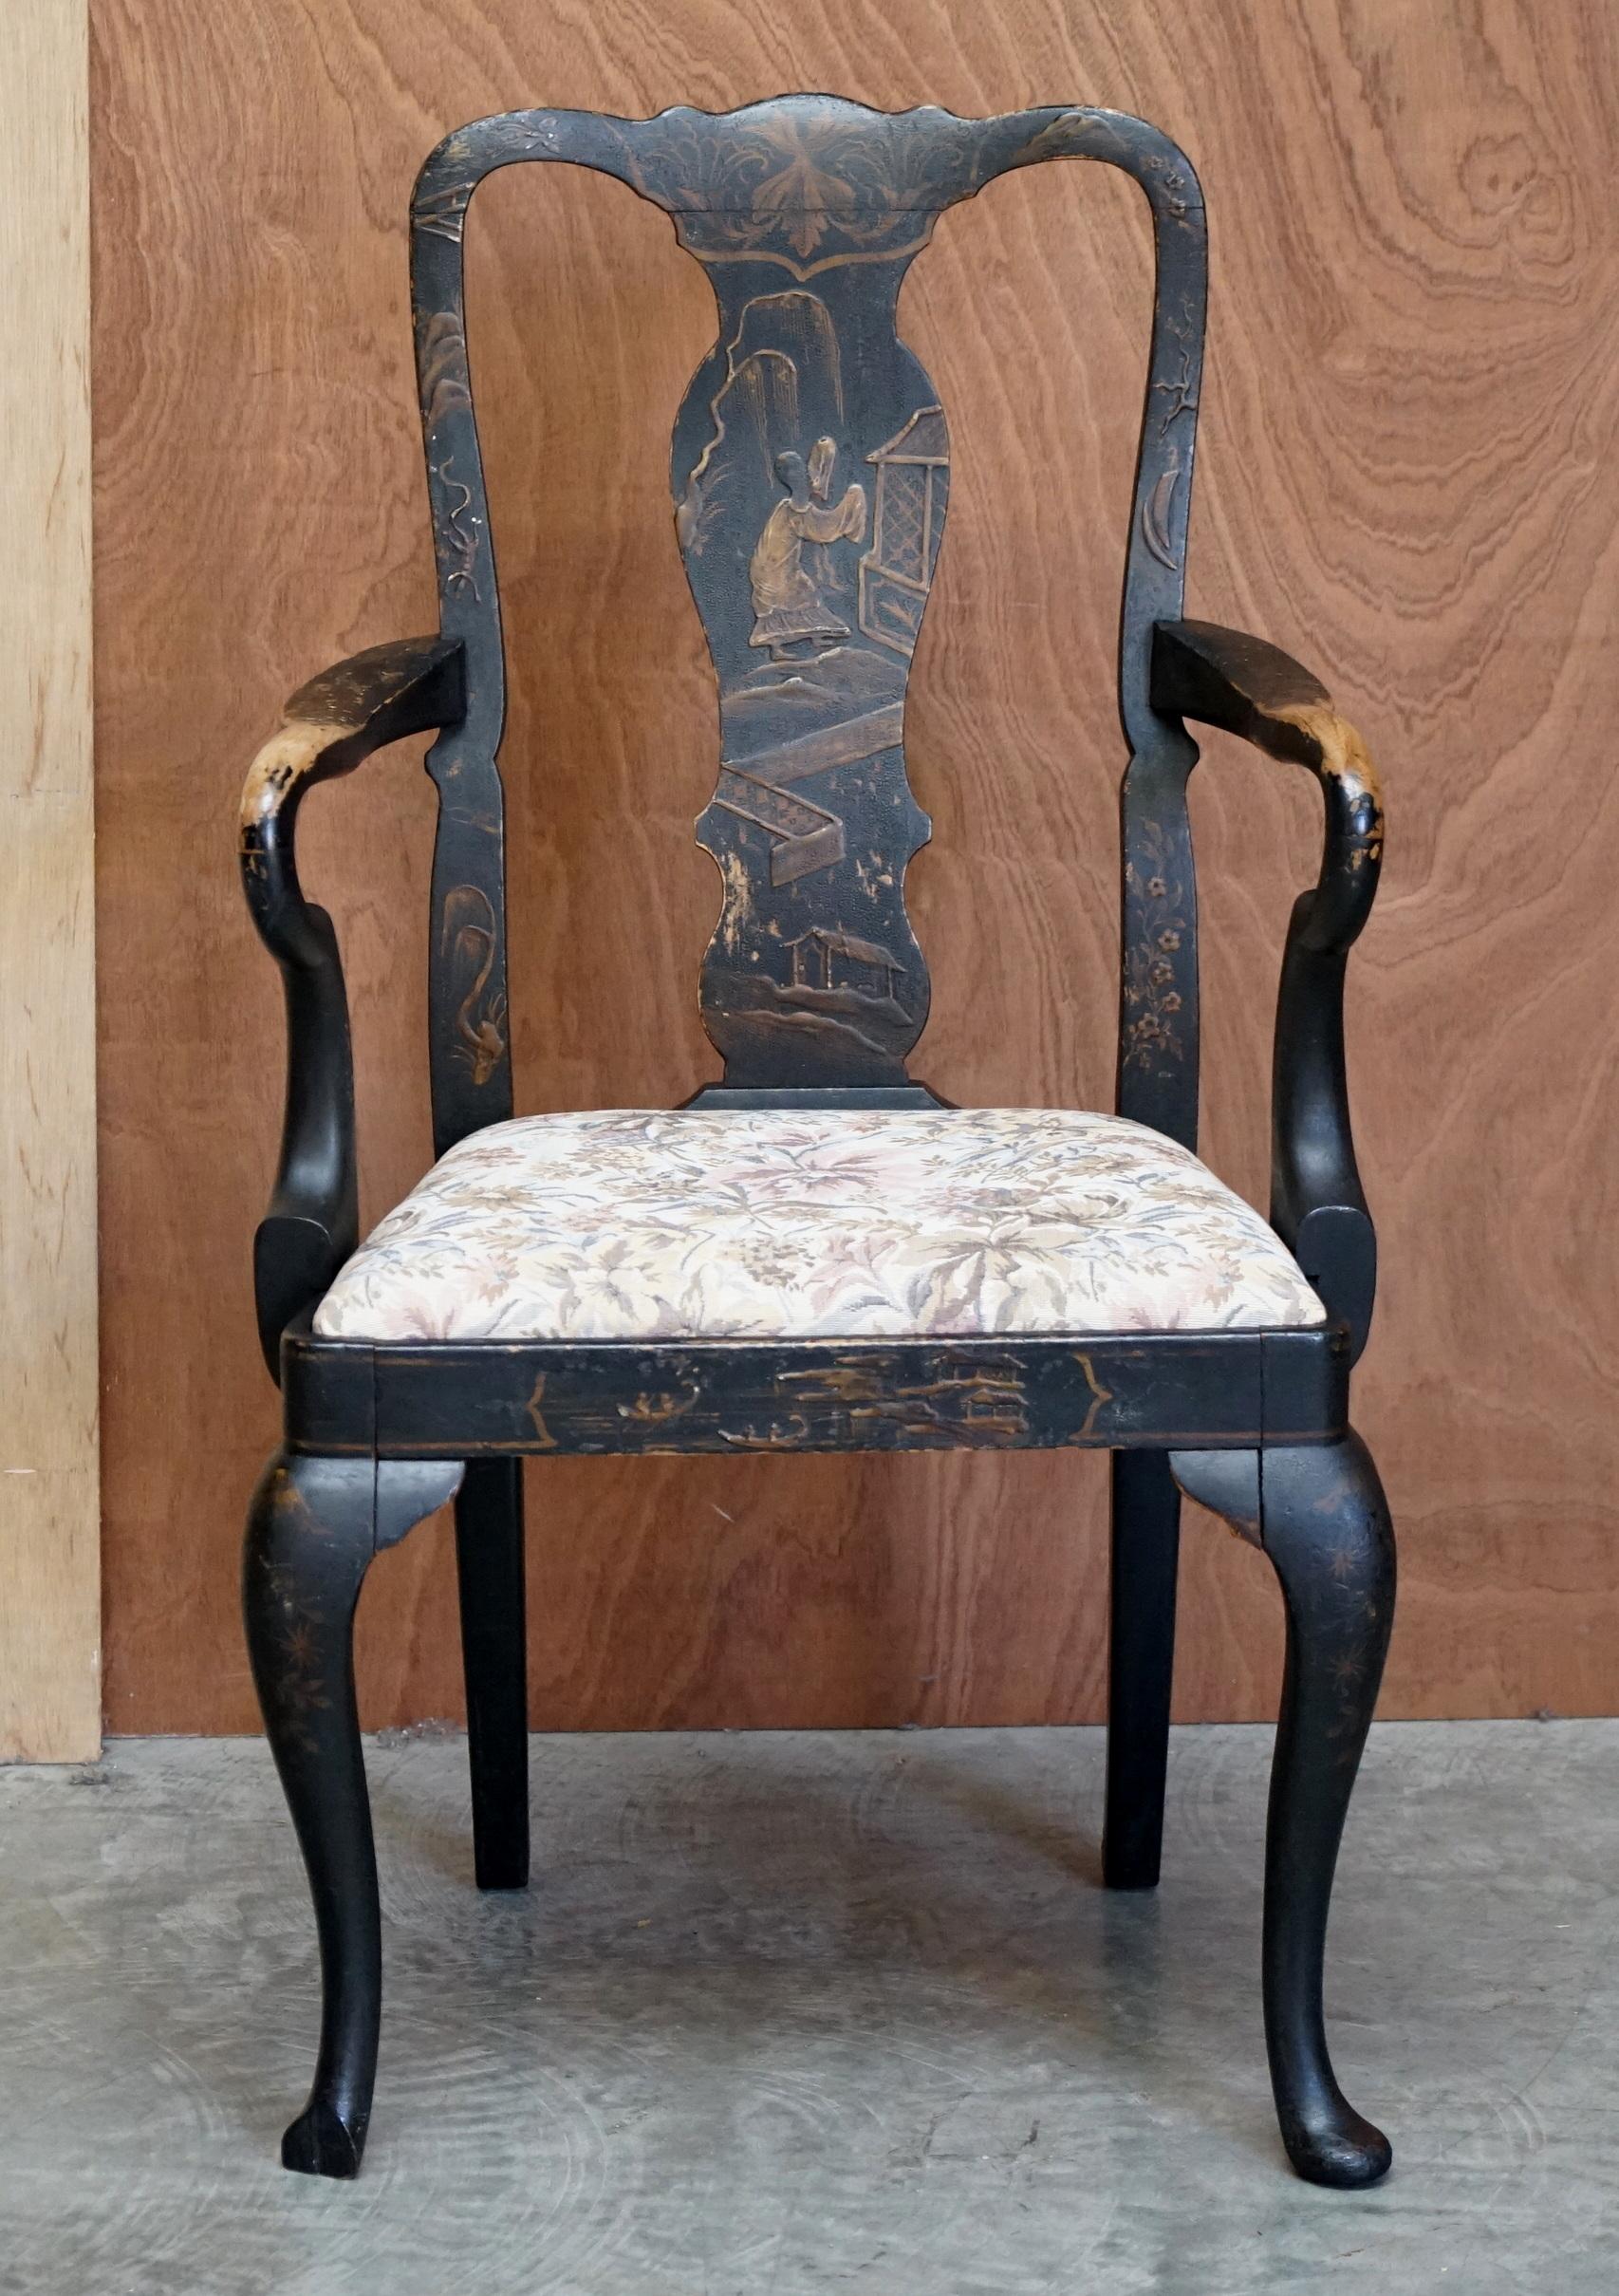 Wir freuen uns, diesen wunderschönen georgianischen Chinoiserie-Sessel aus der Zeit um 1800 mit schwarzer Originalfarbe zum Verkauf anbieten zu können

Was für ein Stück! Basierend auf den frühen George-II-Stühlen, die um 1740 entstanden sind, ist